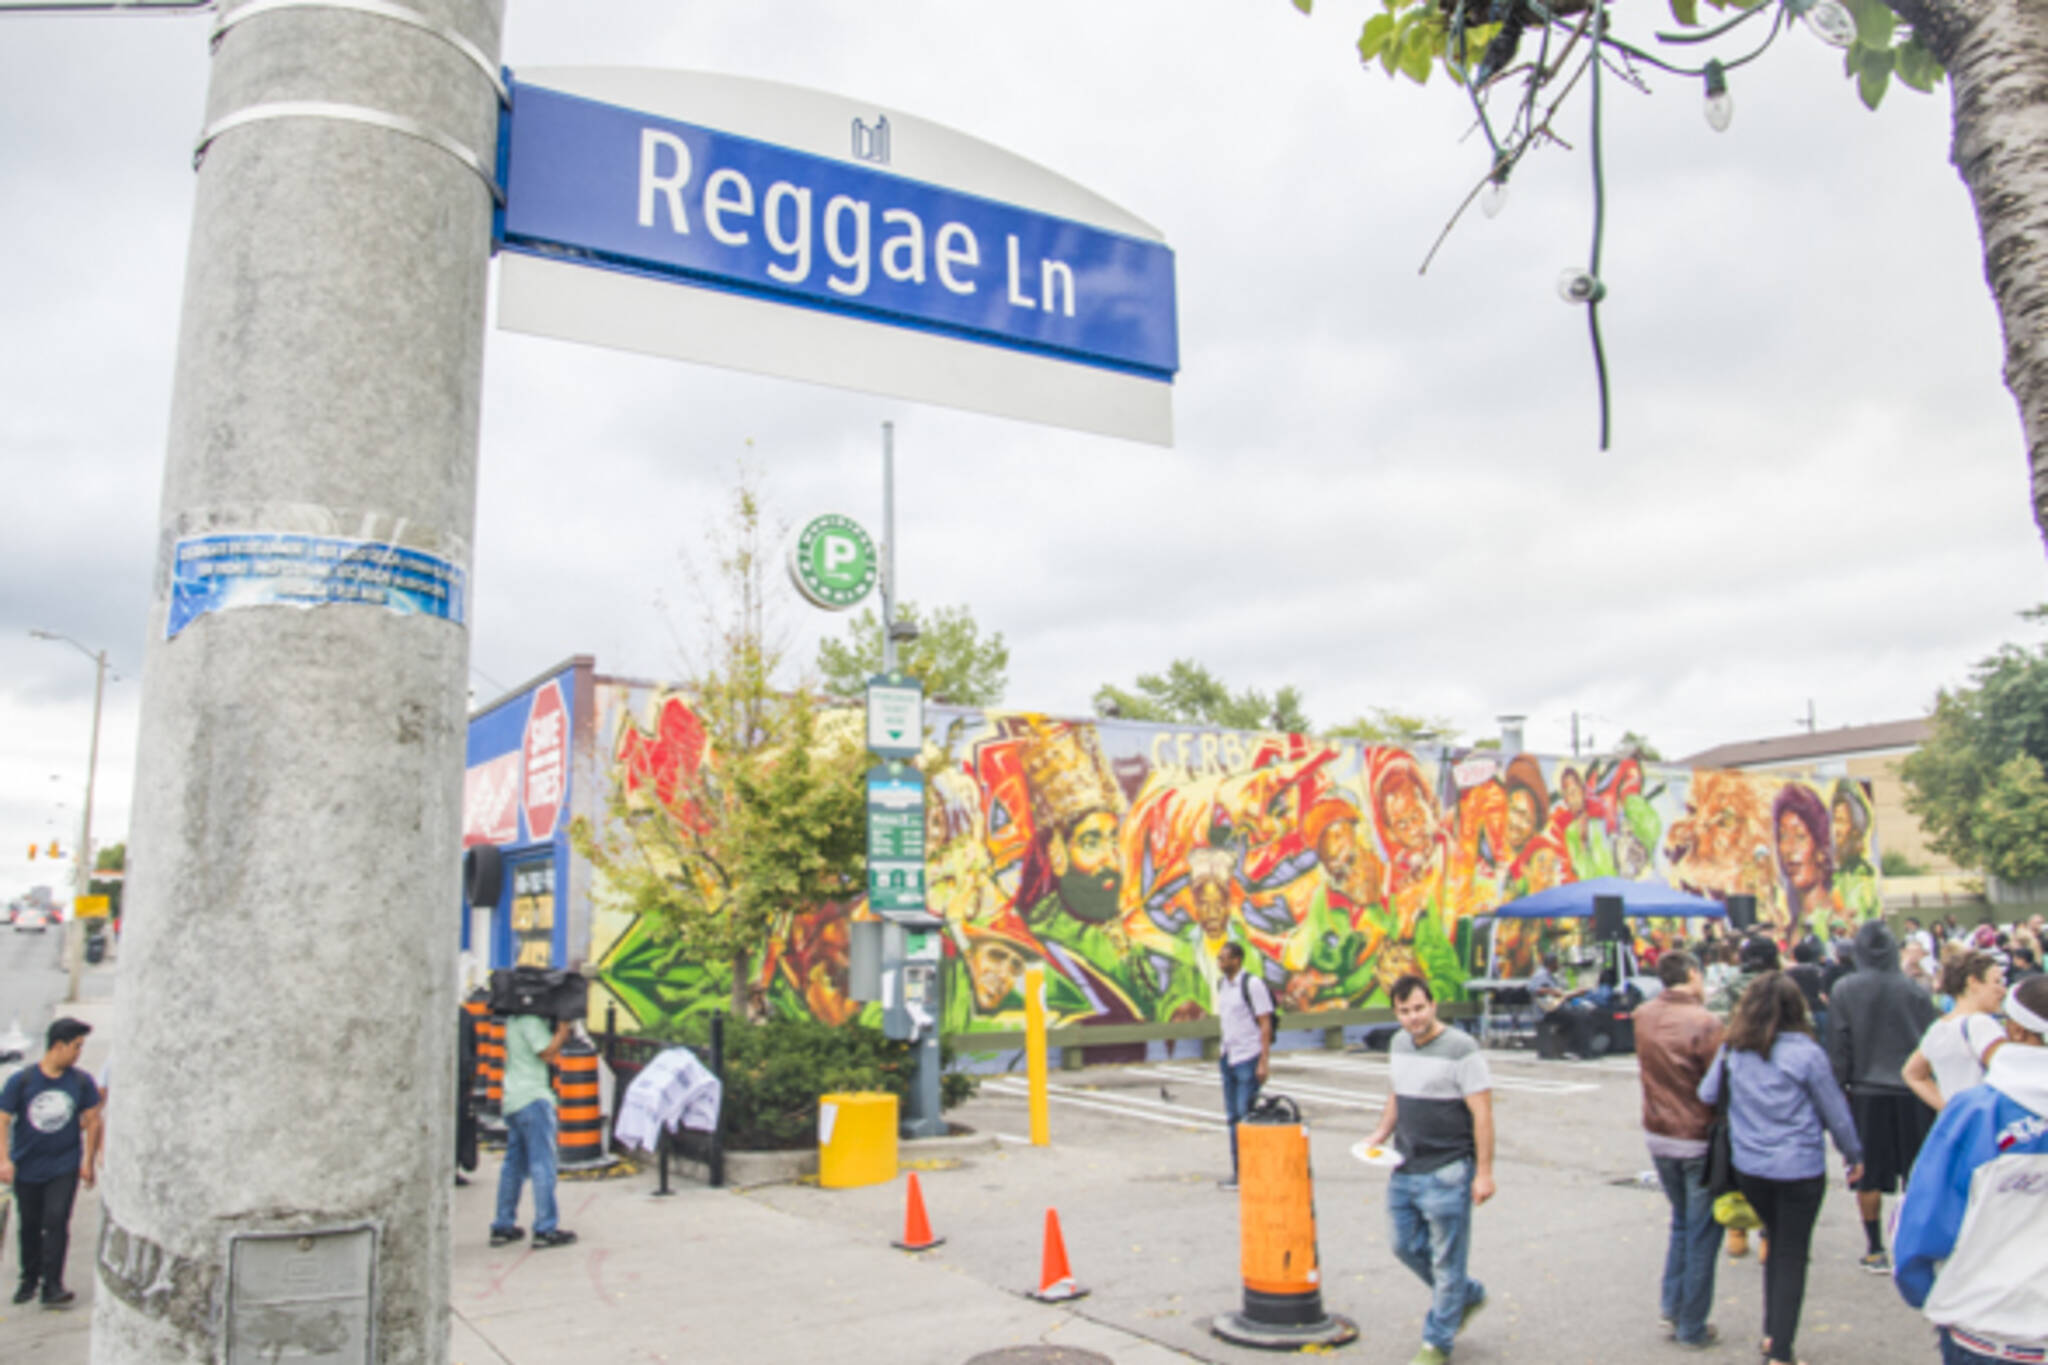 Reggae Lane Toronto